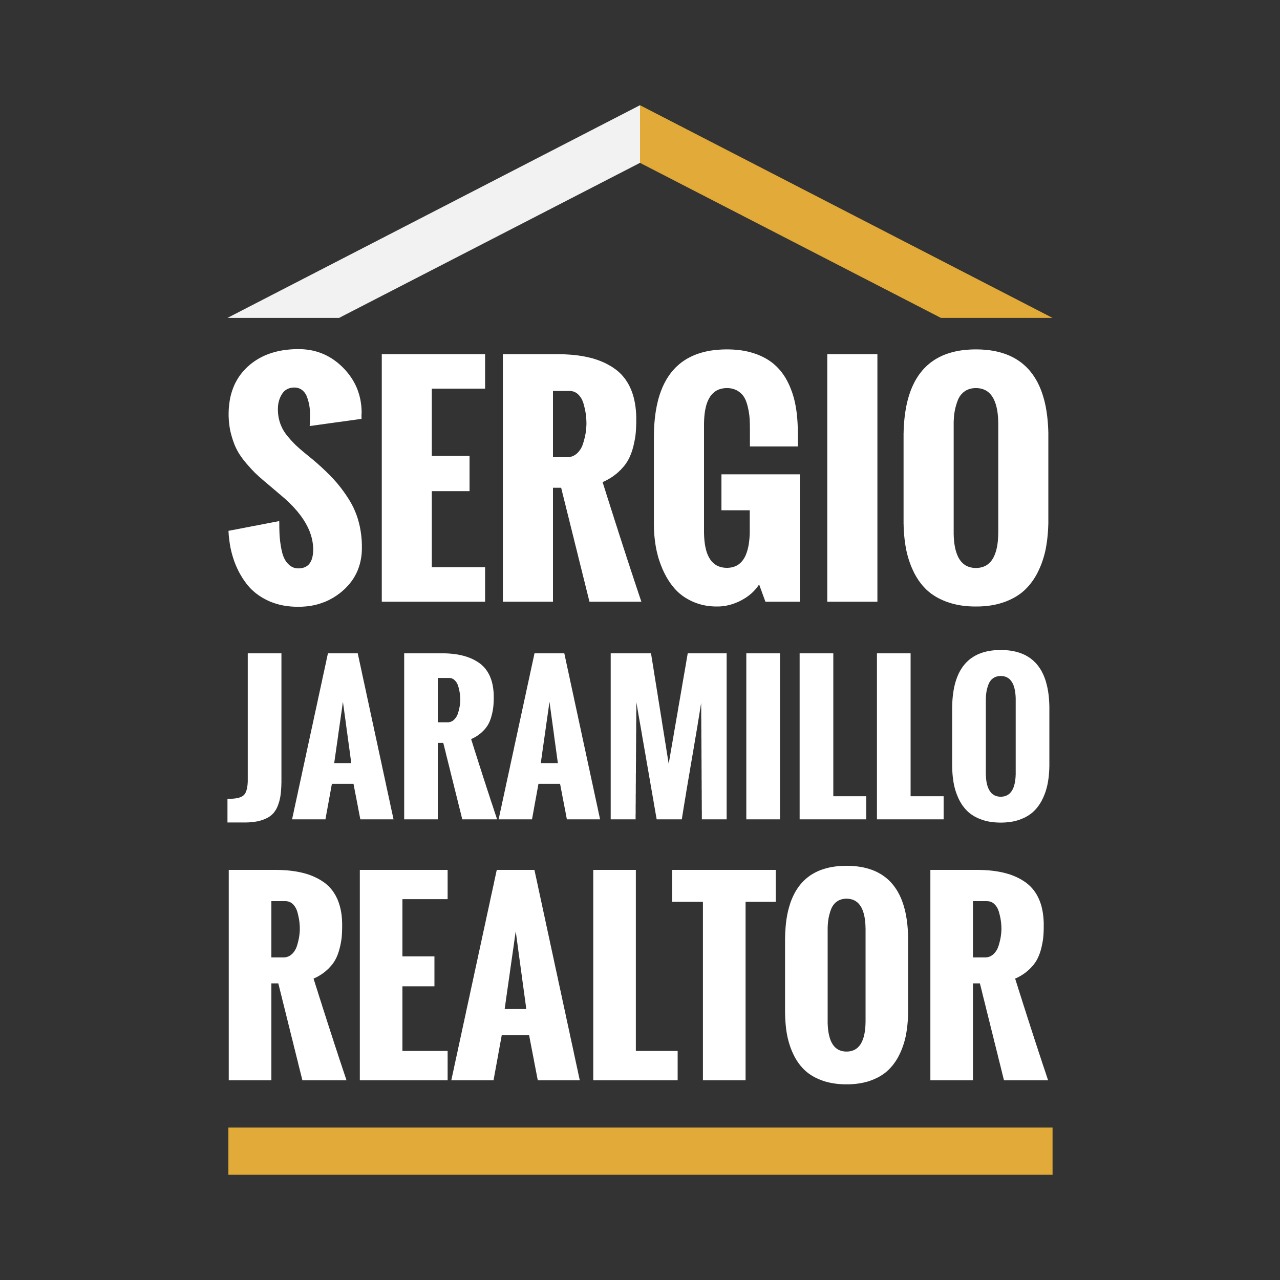 Bienvenidos a Sergio Jaramillo Realtor